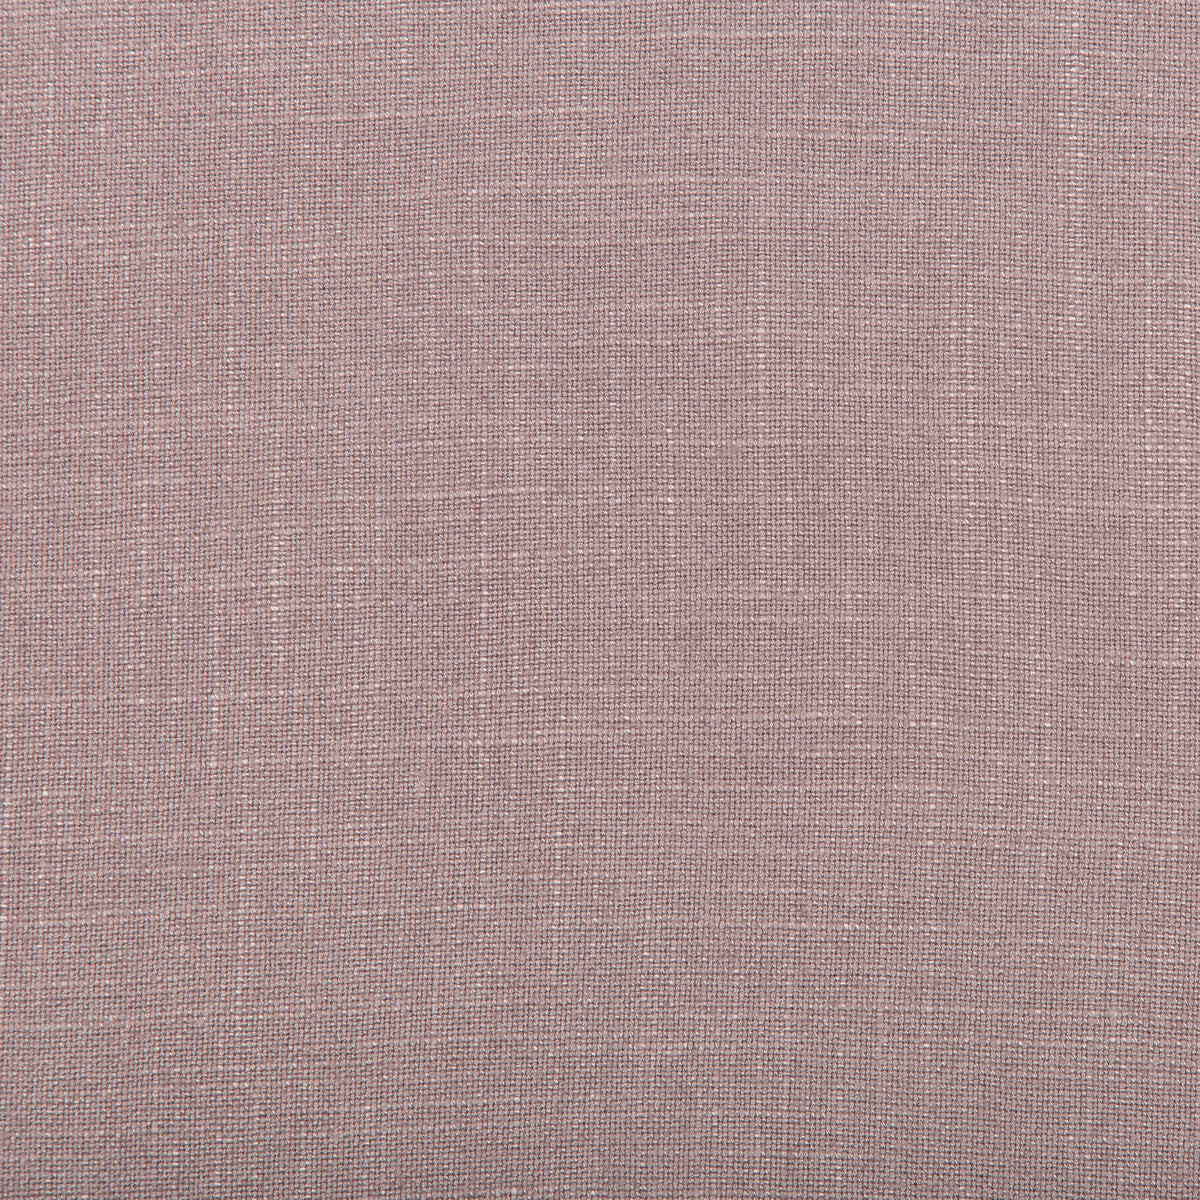 Aura fabric in violet color - pattern 35520.110.0 - by Kravet Design